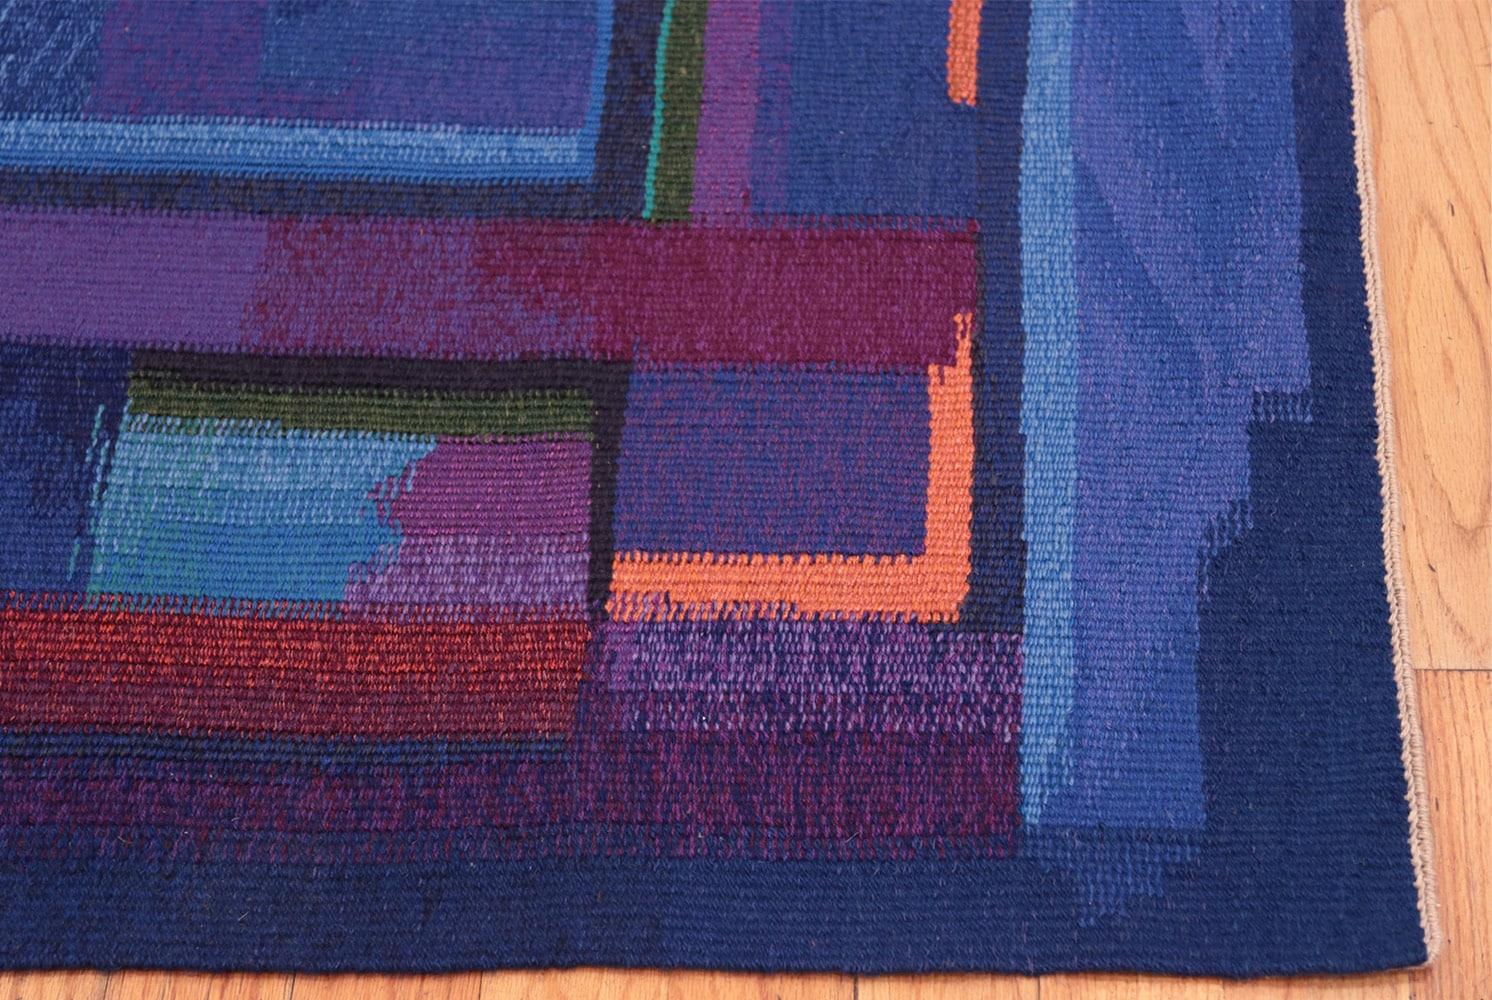 Vintage Norwegian Tapestry Rug by Eevahenna Aalto, Herkunftsland: Norwegen, Entstehungszeit: Mitte des 20. Größe: 1,04 m x 1,37 m (3 ft 5 in x 4 ft 6 in)